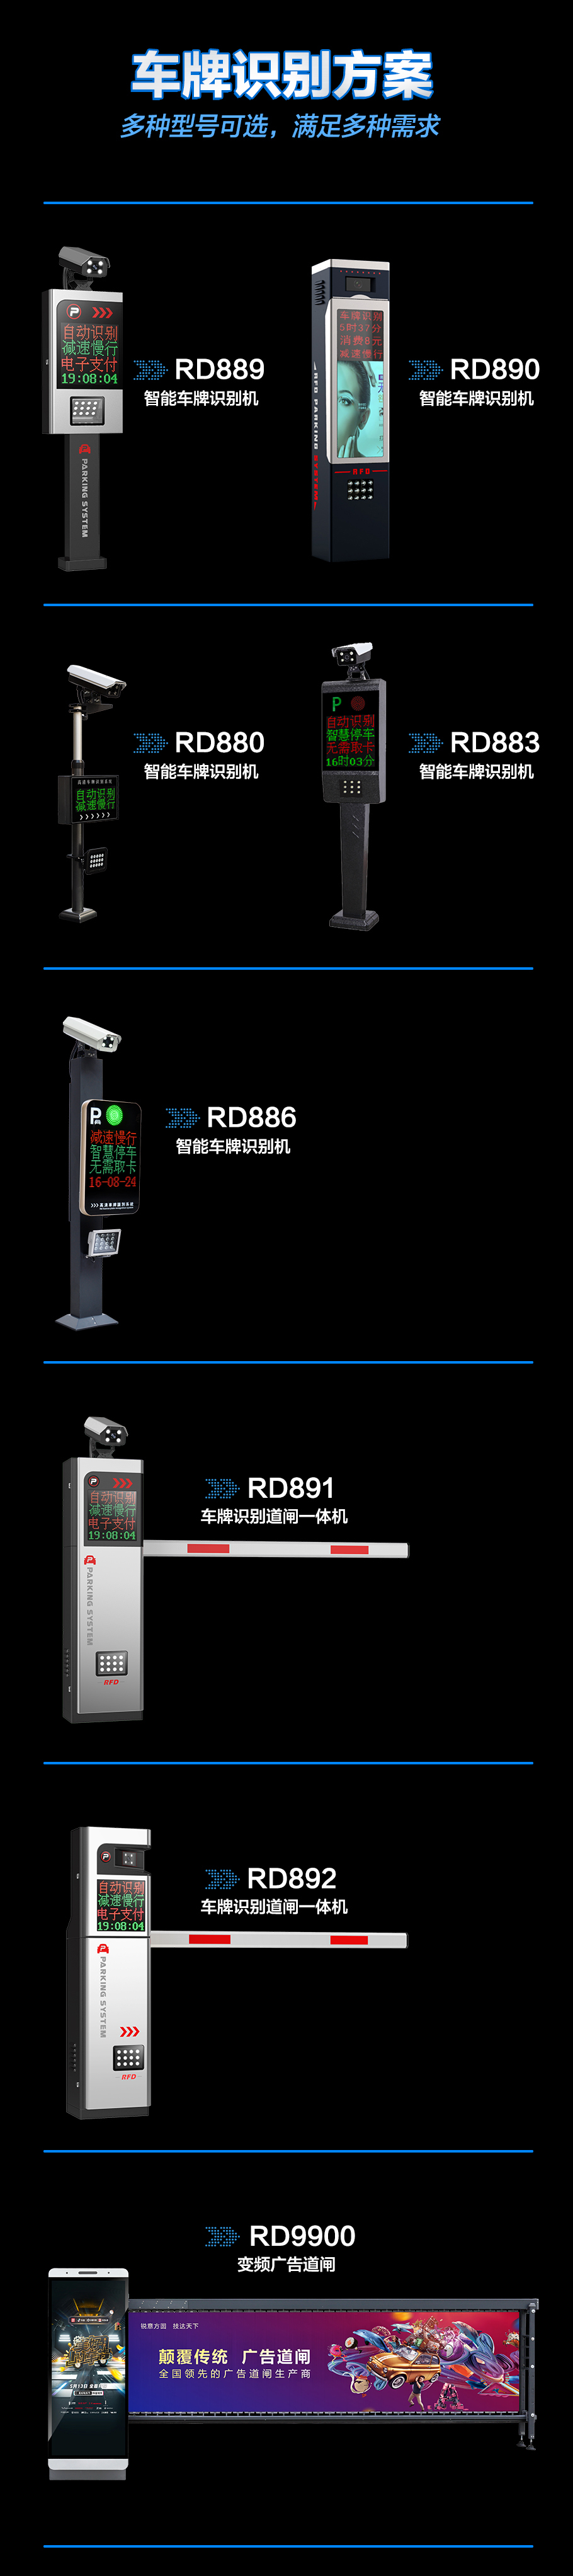 RD889车牌识别系统